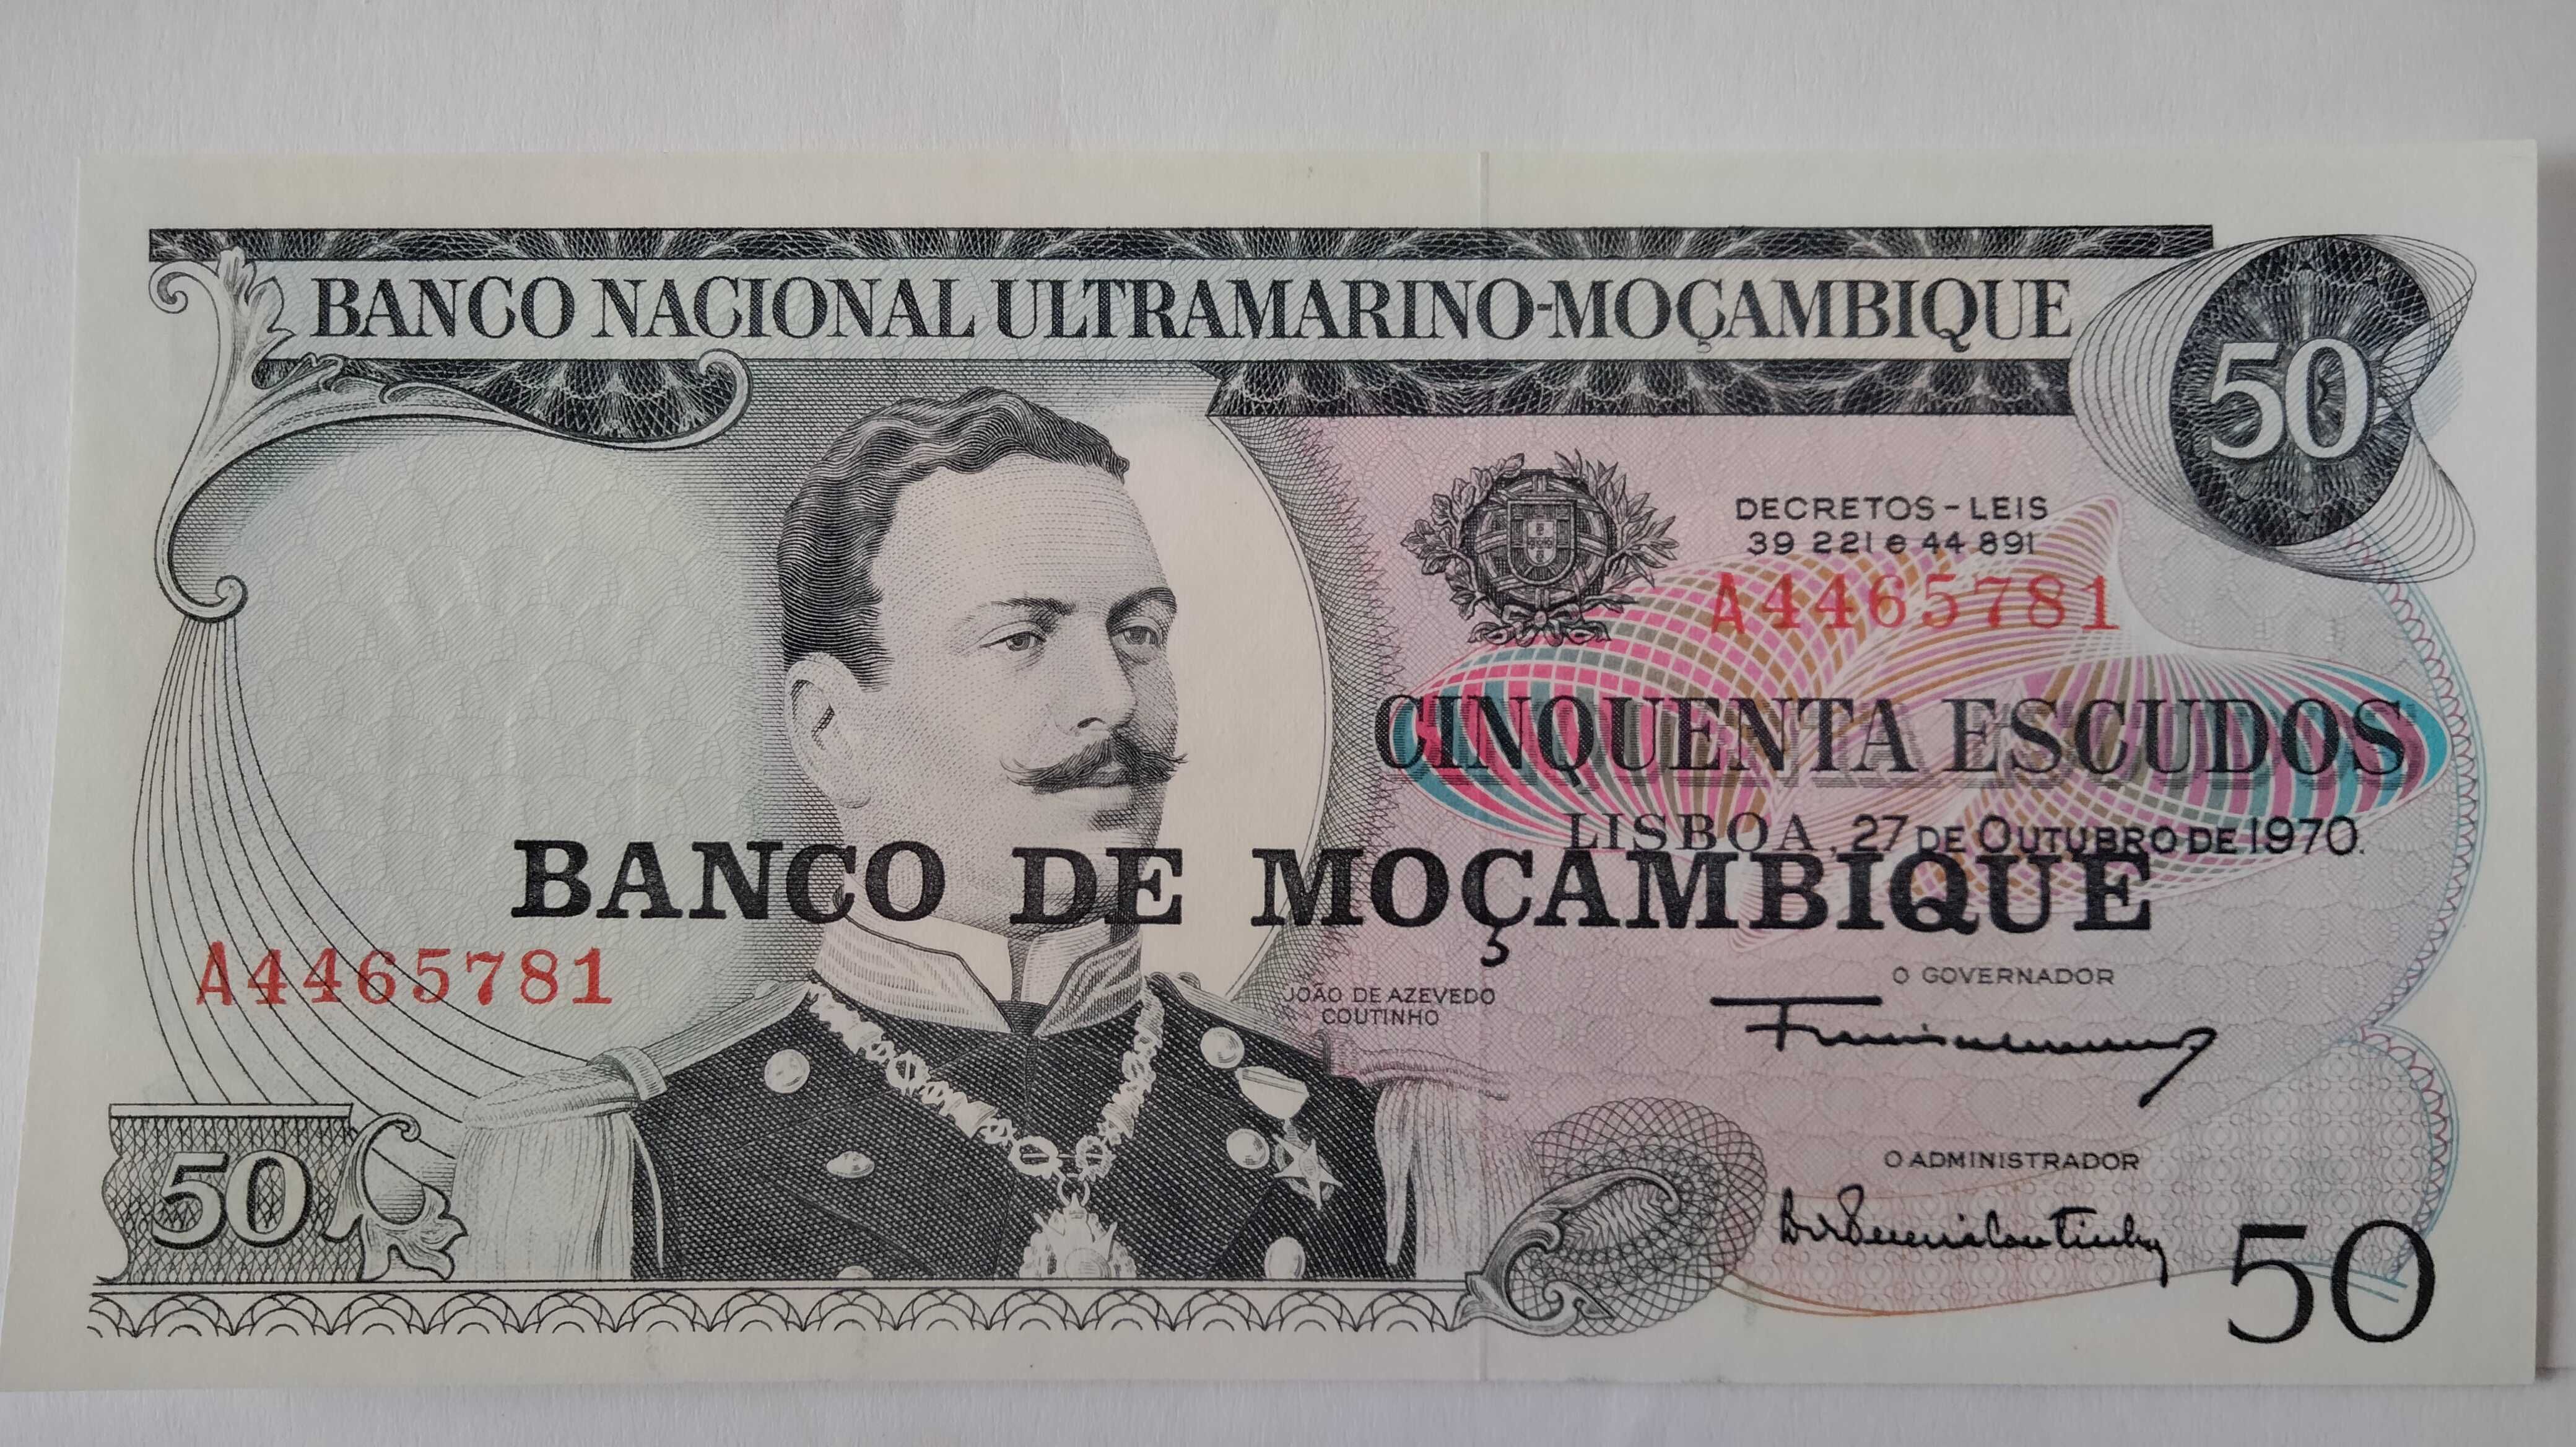 3 Notas Portuguesas Circuladas na Ex Colónia  Ultramarina  Moçambique